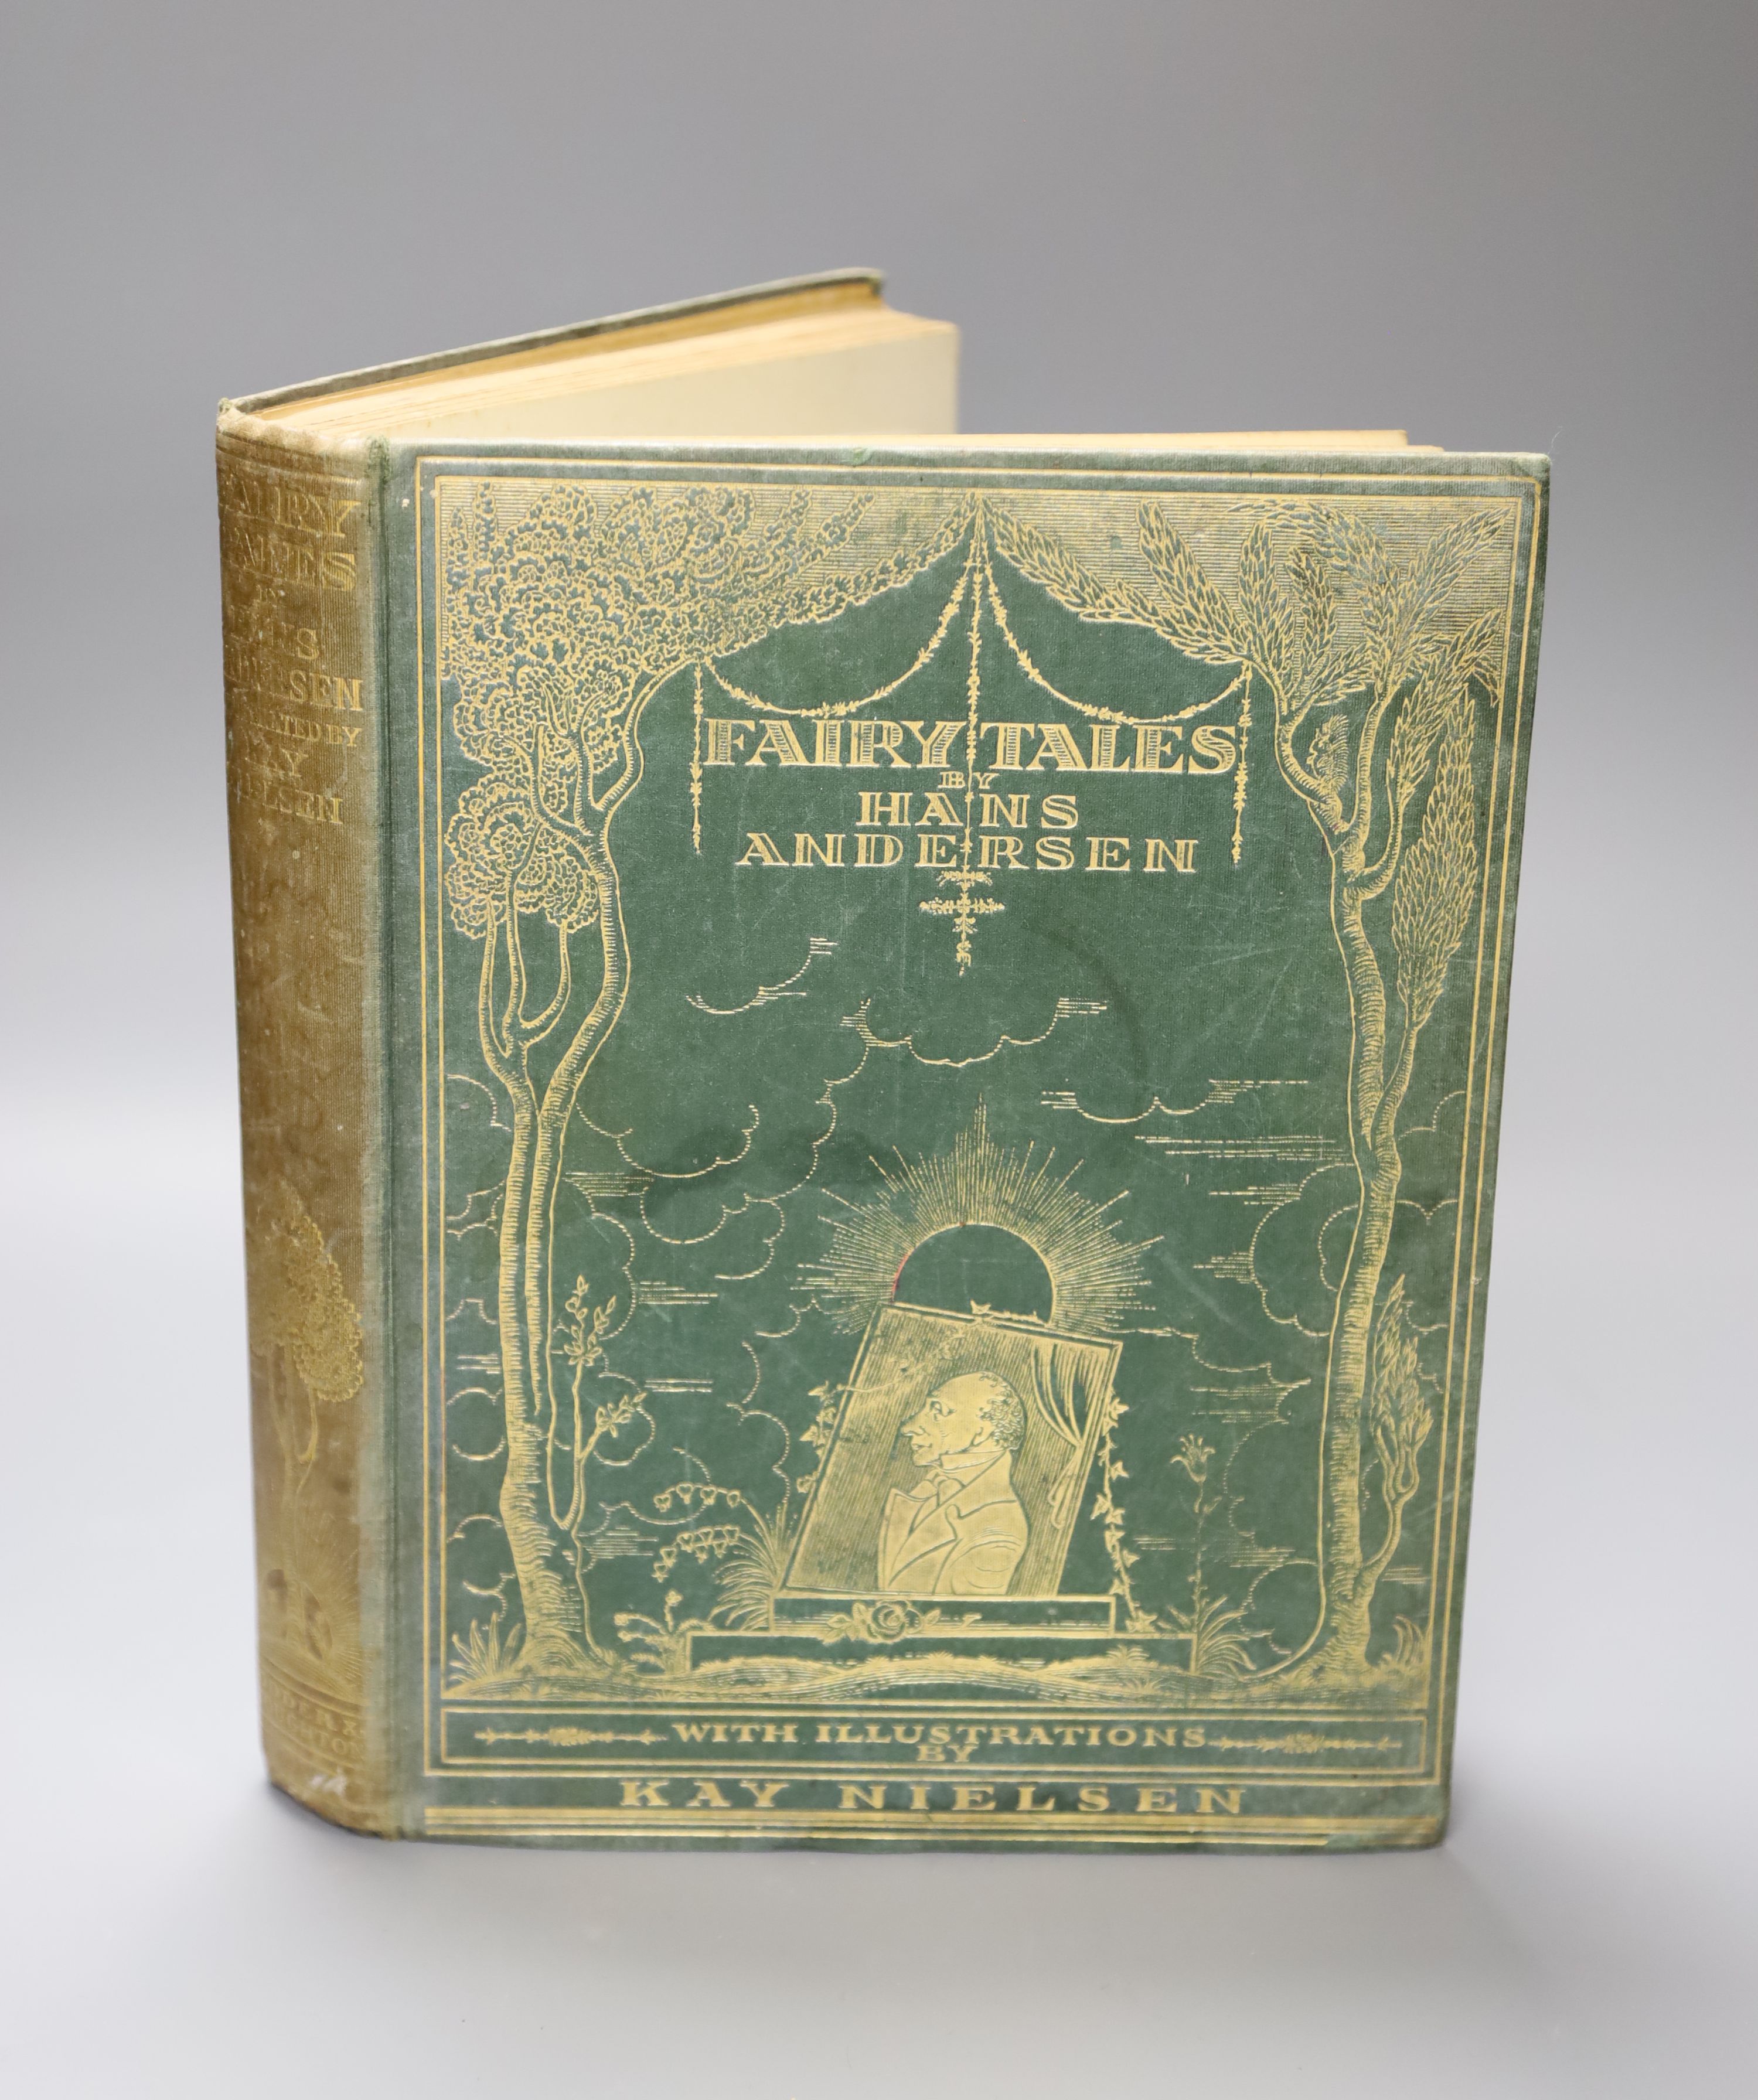 Nielsen, Kay (Illus), Fairy Tales by Hans Andersen, n.d. [1924],